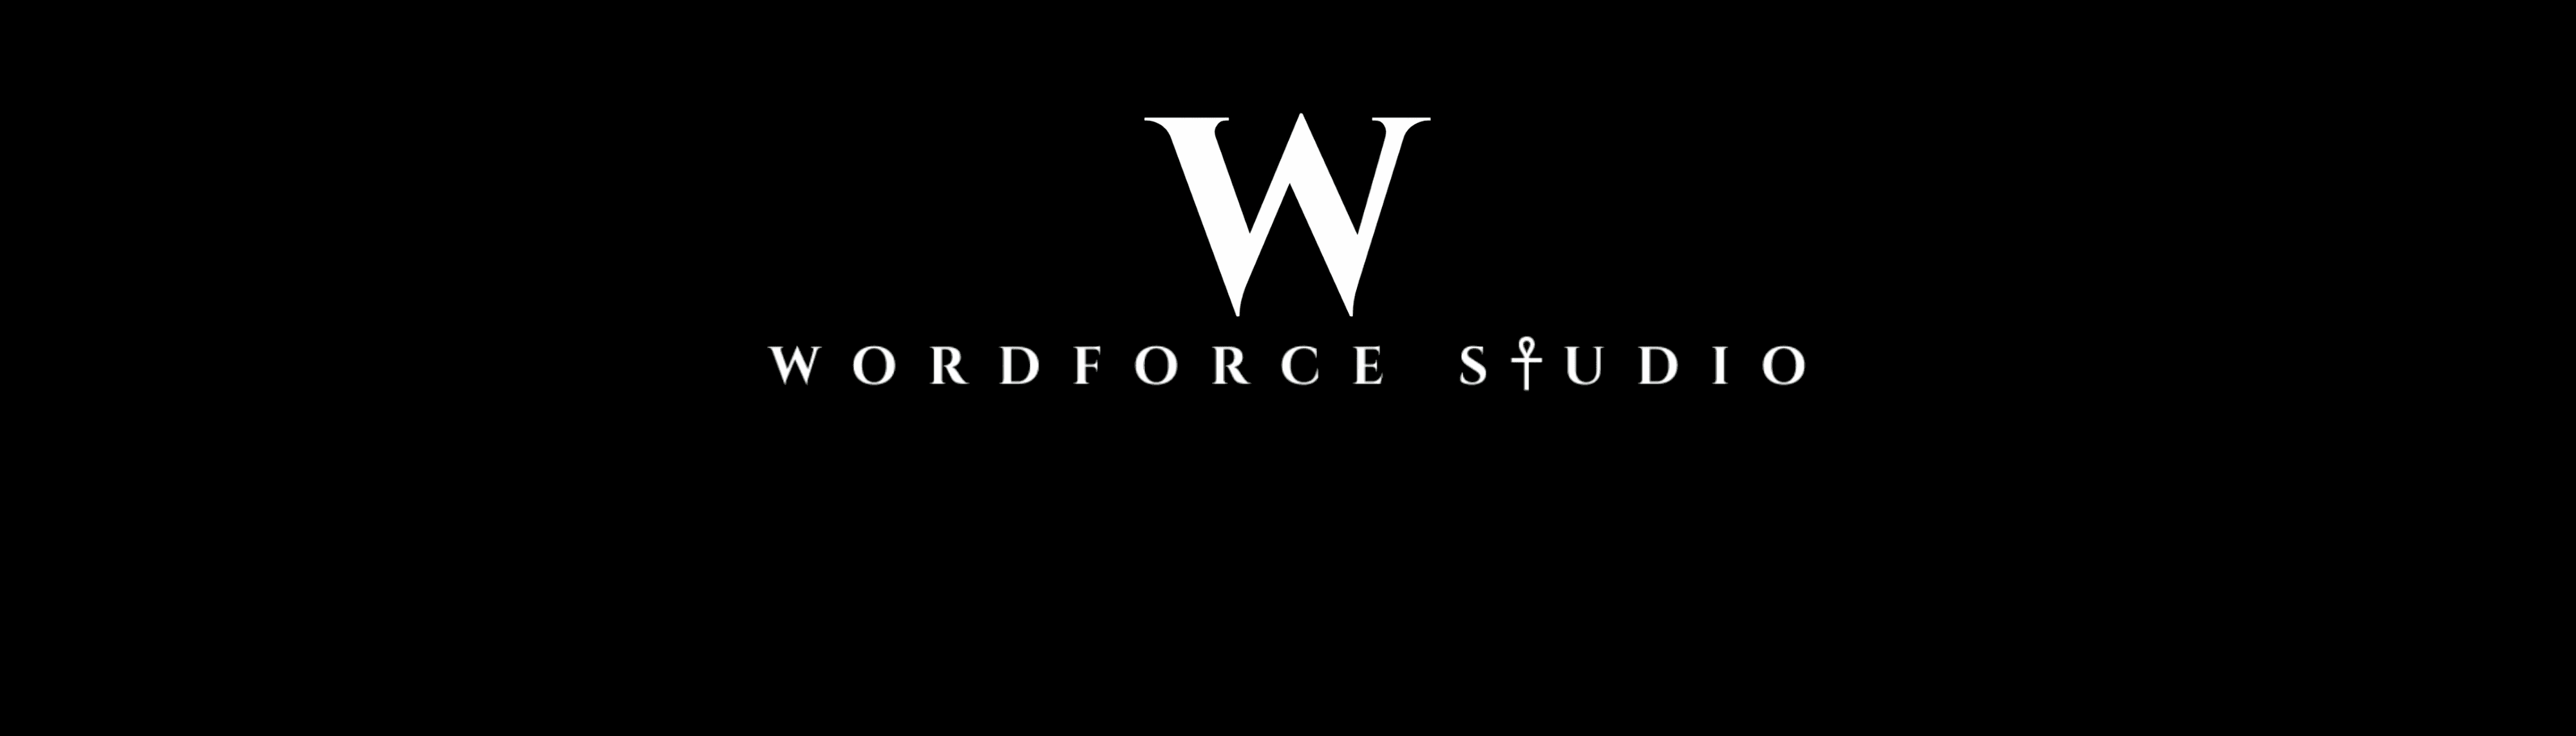 wordforcestudio banner